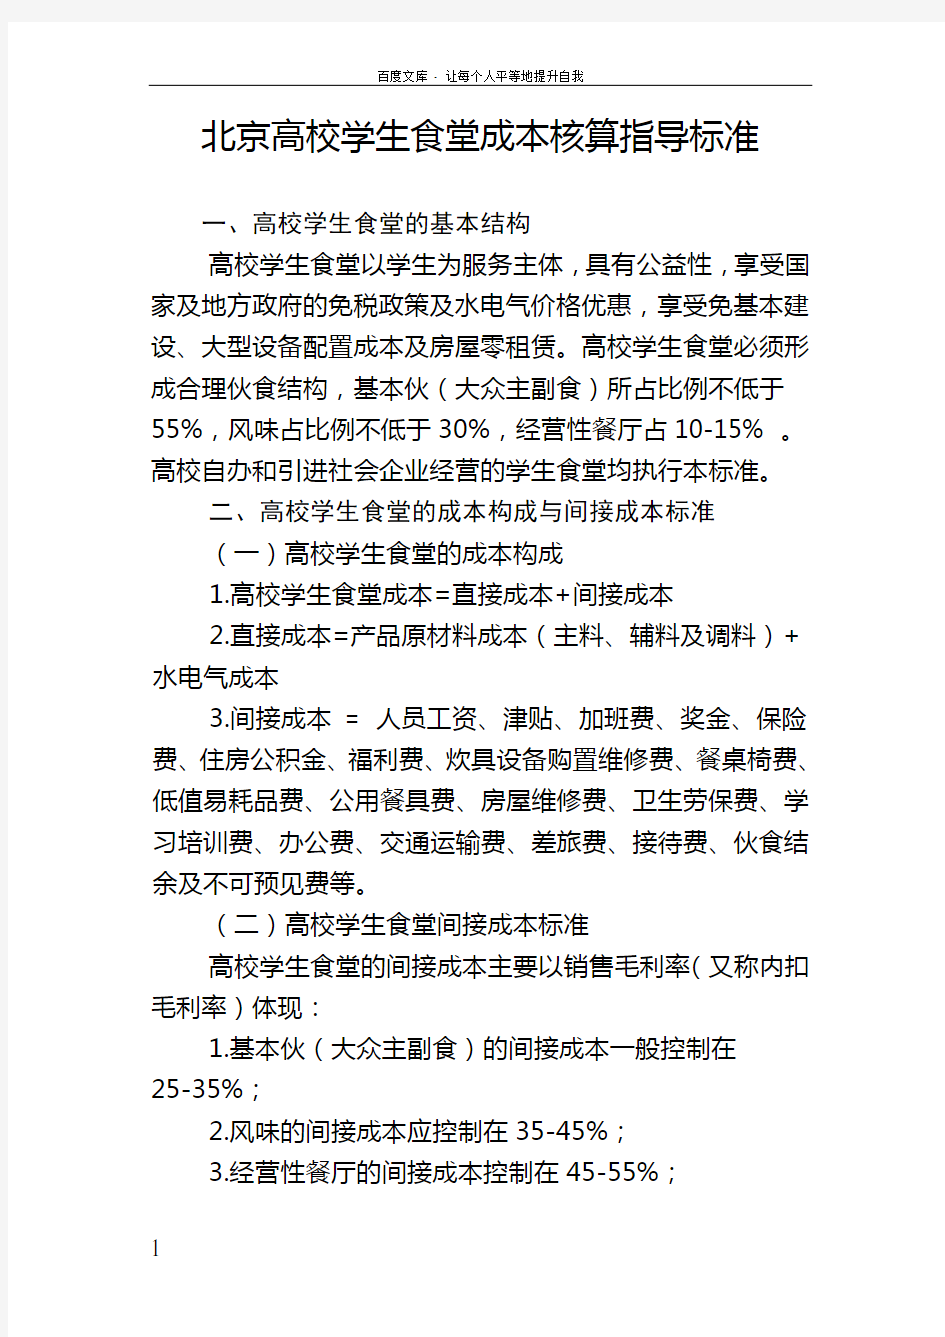 北京高校学生食堂成本核算指导标准